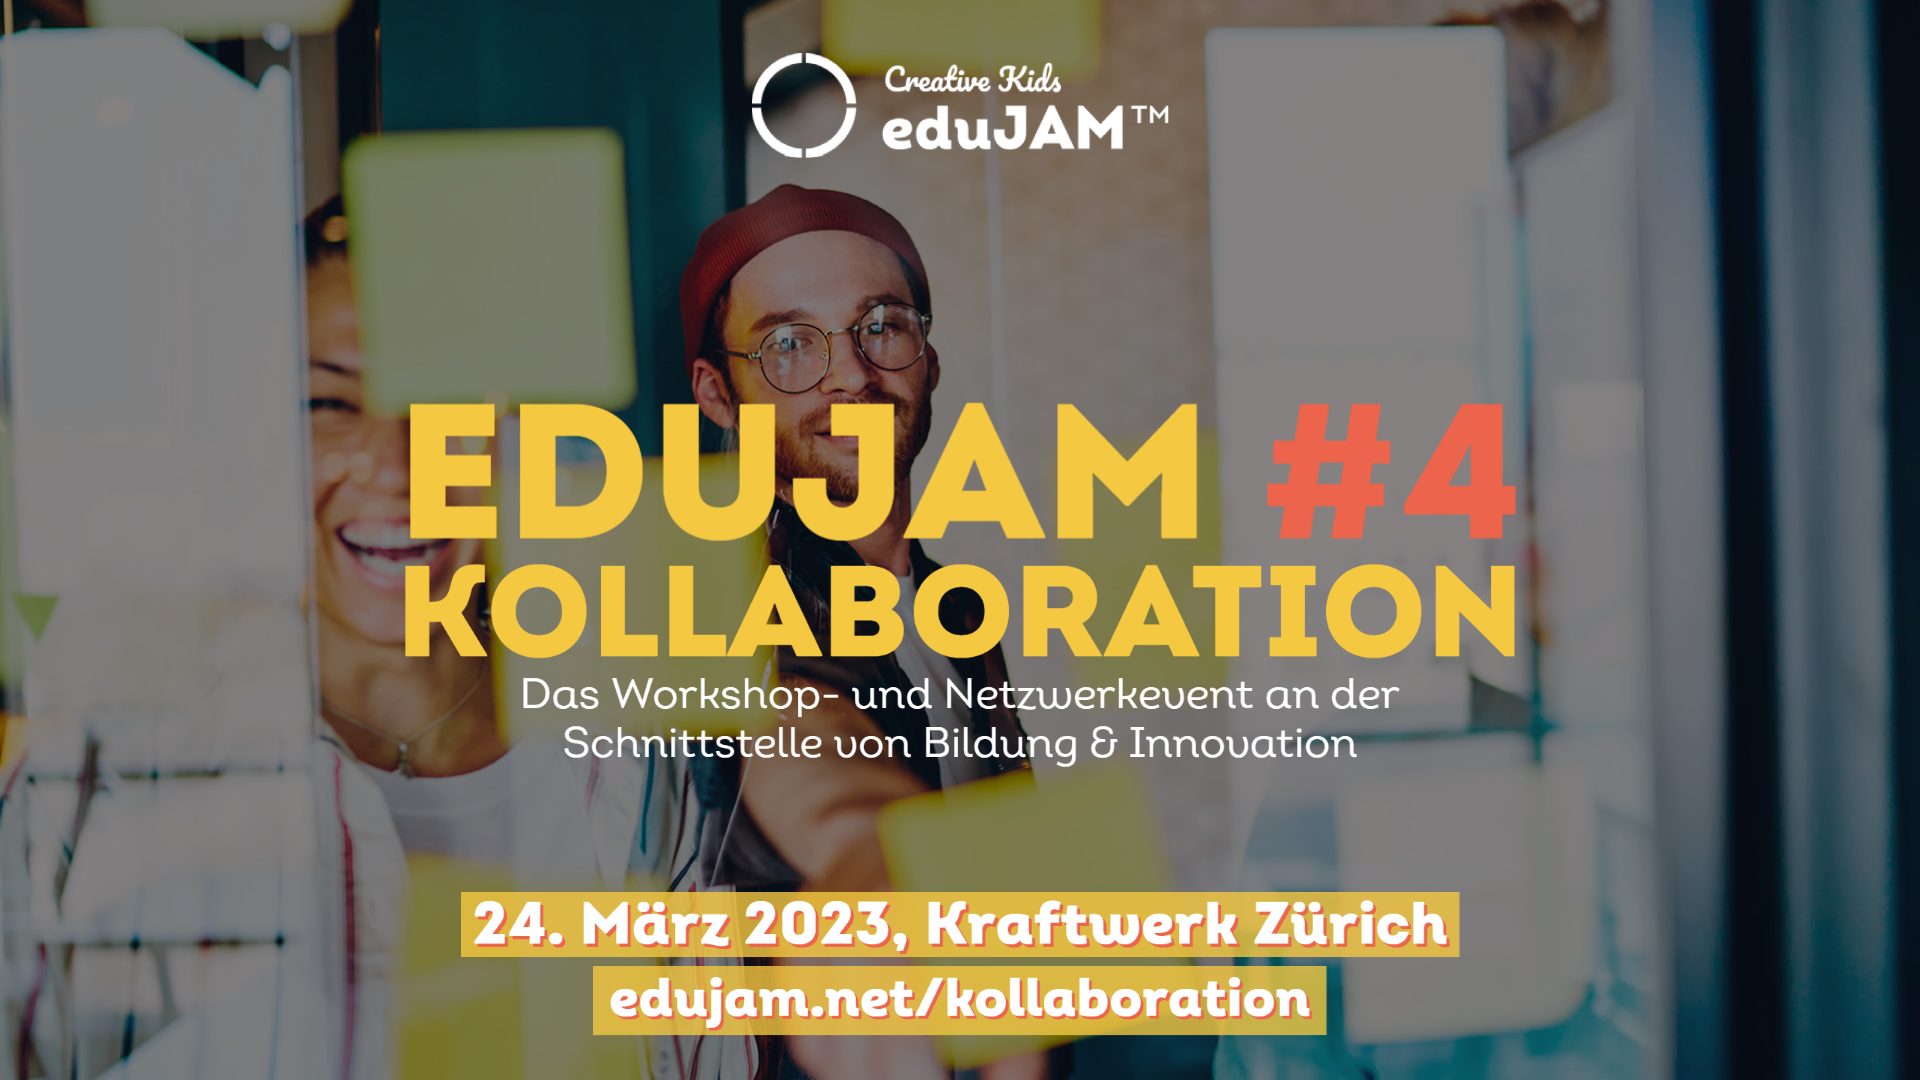 Einladung zum Edujam #4 Kollaboration von Creative Kids